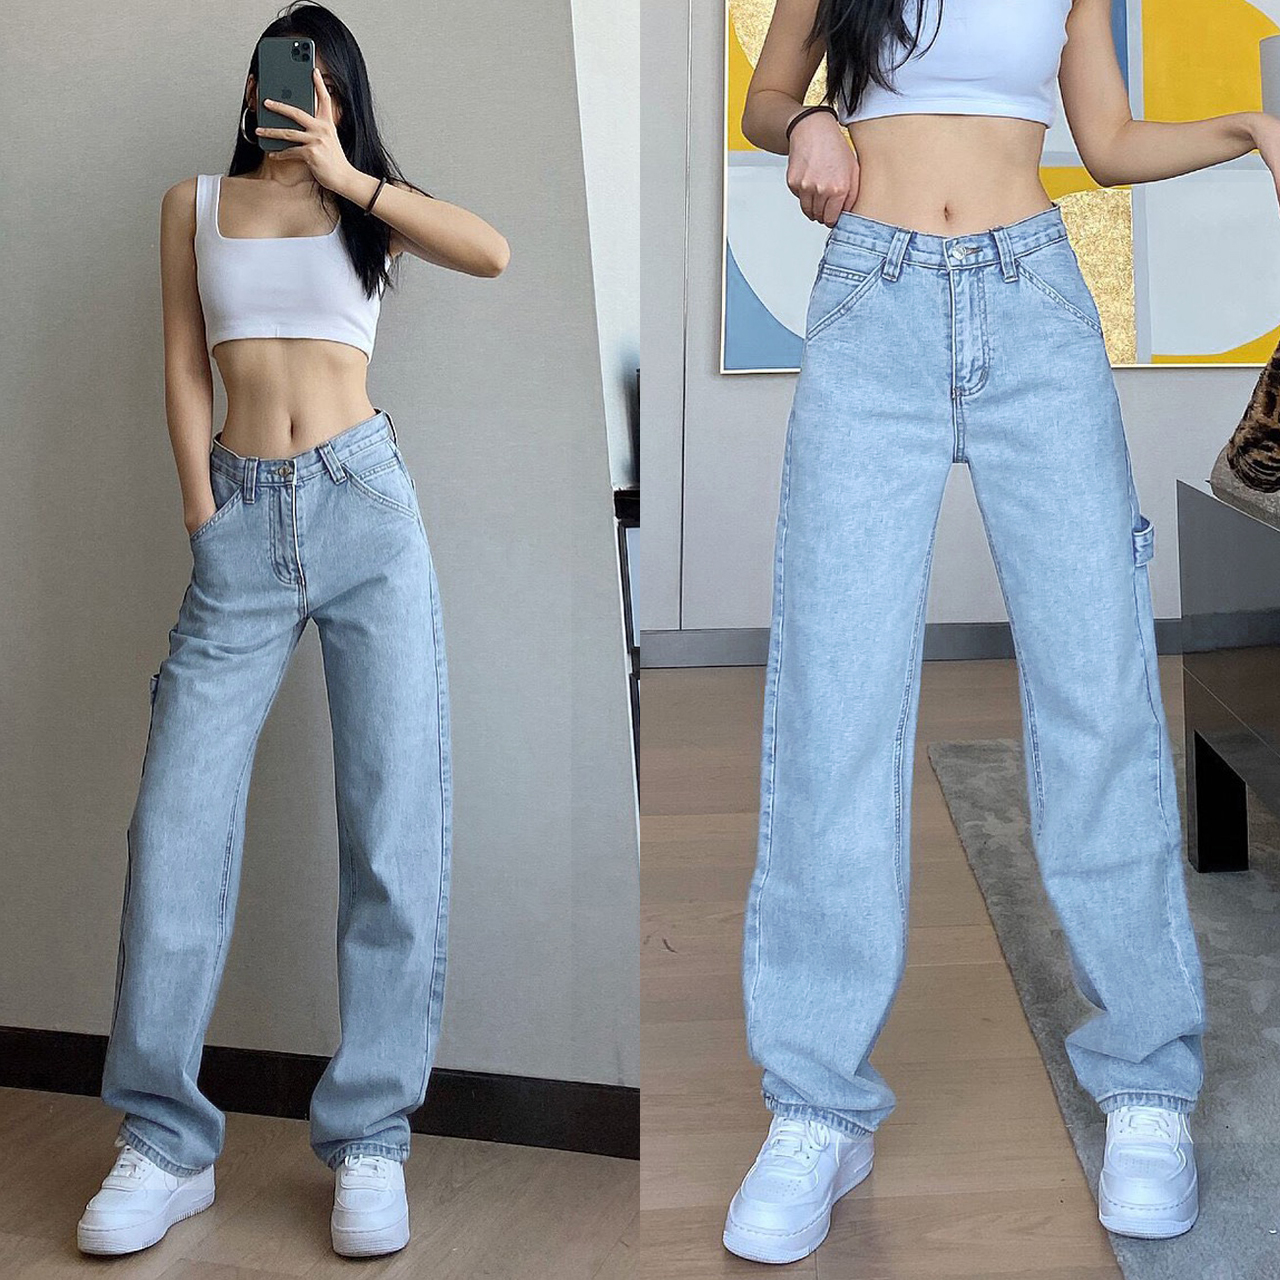 มุมมองเพิ่มเติมเกี่ยวกับ 【S/M/L/XL】Girls jeanswaist jeans female straight old pants 2021 new Hong Kong taste ตาข่ายสีแดงกางเกงยีนส์เอวสูงหญิงกางเกงเก่าตรง ใหม่ฮ่องกงรสชาติผ้าม่านกว้างกางเกงขา